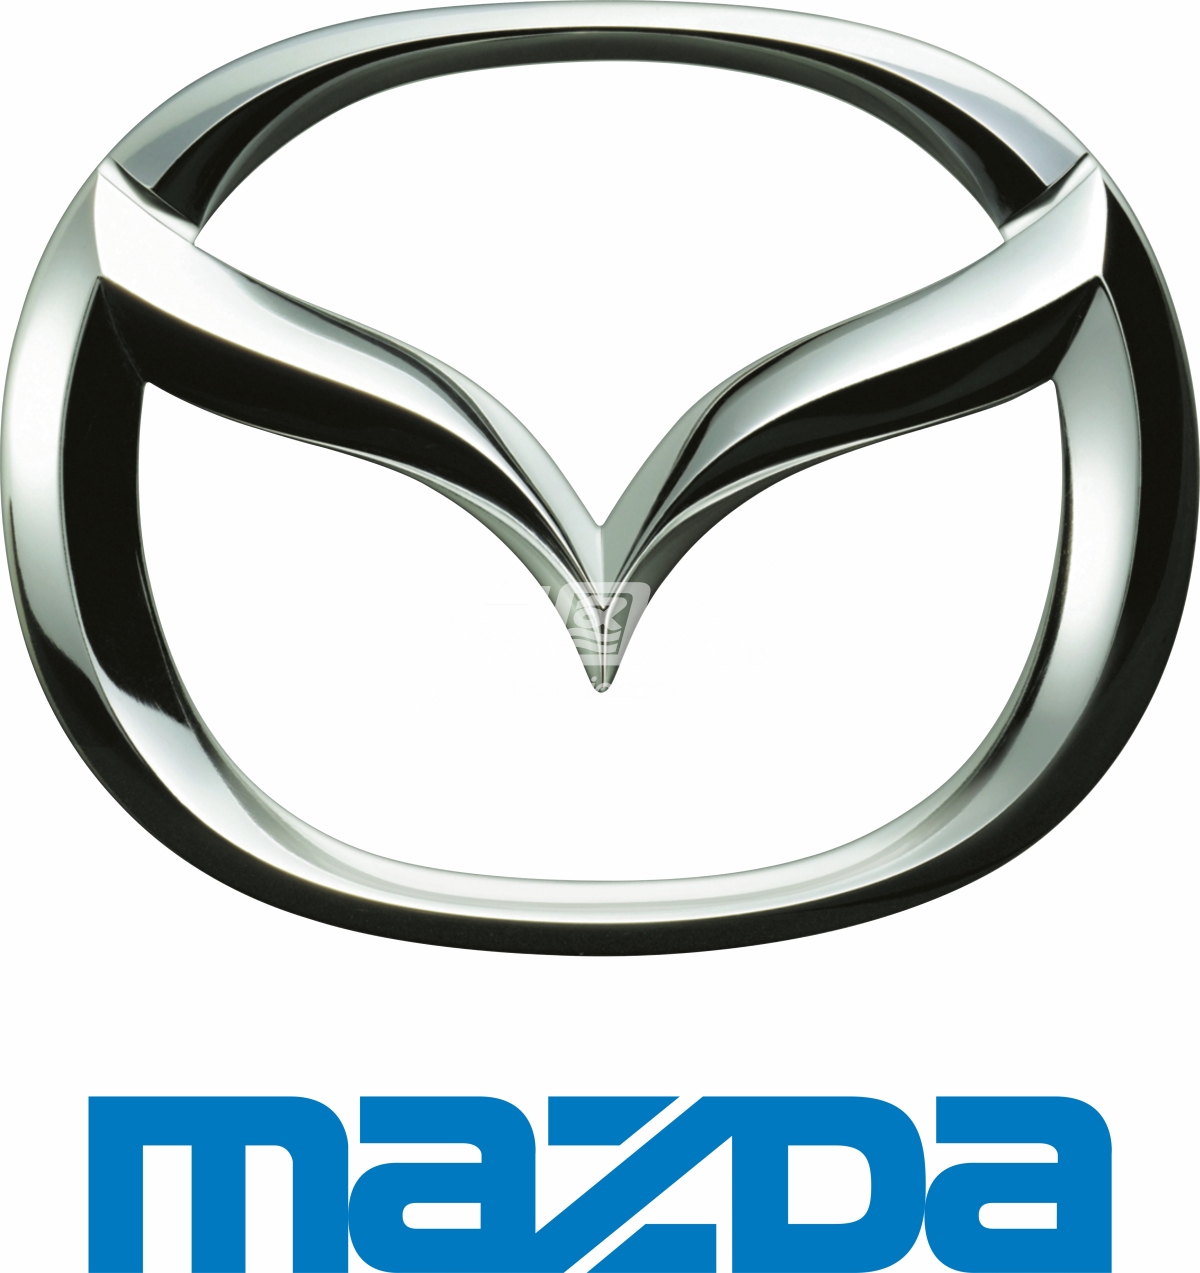 马自达logo